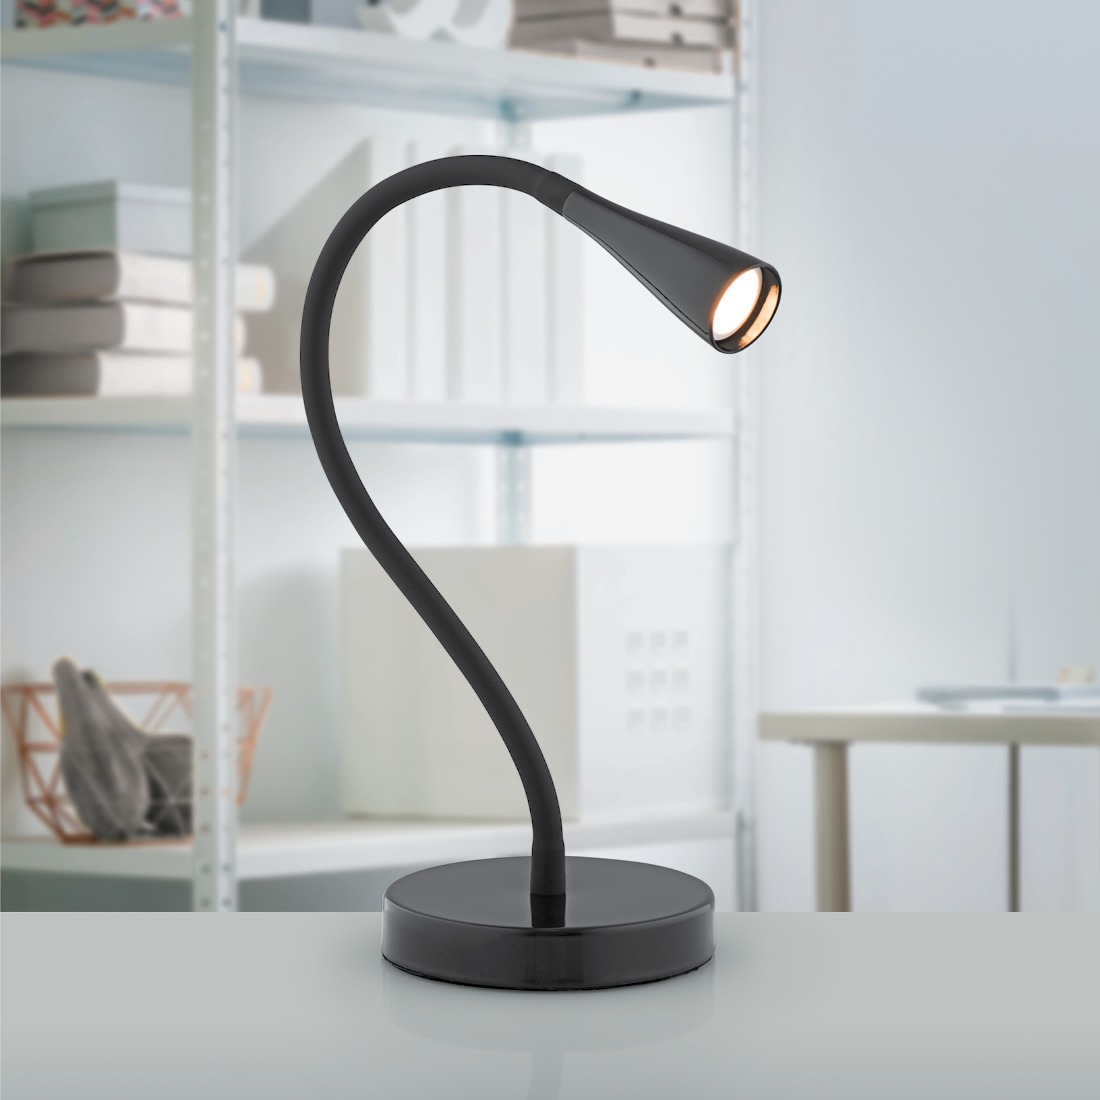 Lighting-guide-desk-lamp